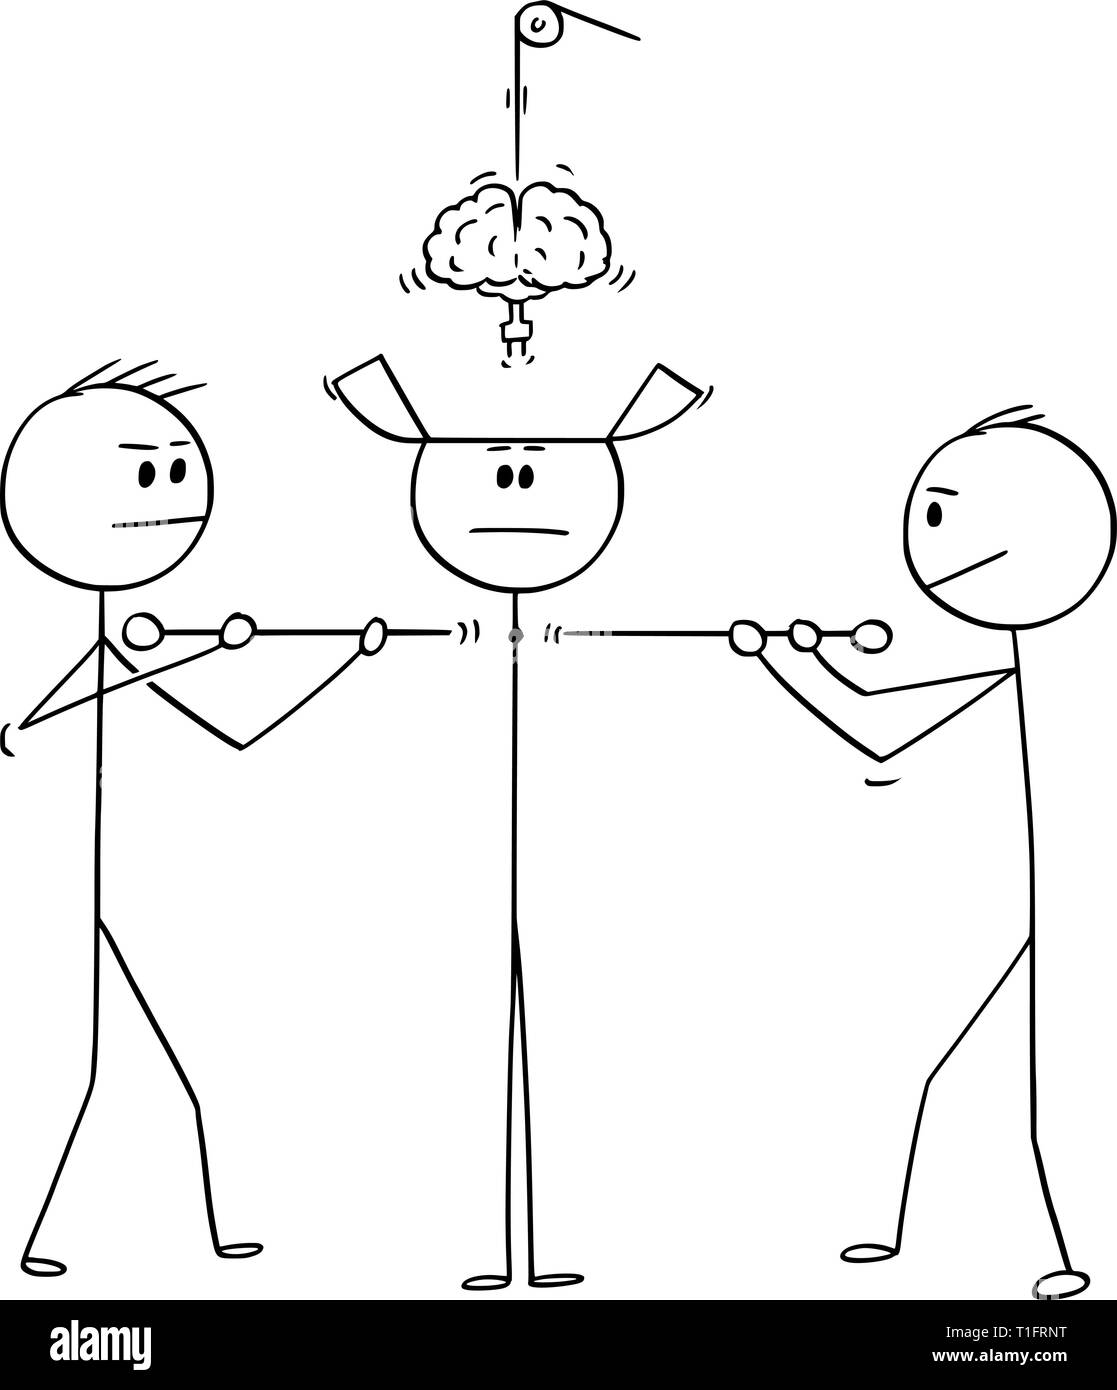 Cartoon Strichmännchen Zeichnung konzeptuelle Abbildung von zwei Techniker konstruieren oder Zusammenfügen von Mensch oder Mensch von Teilen. Stock Vektor